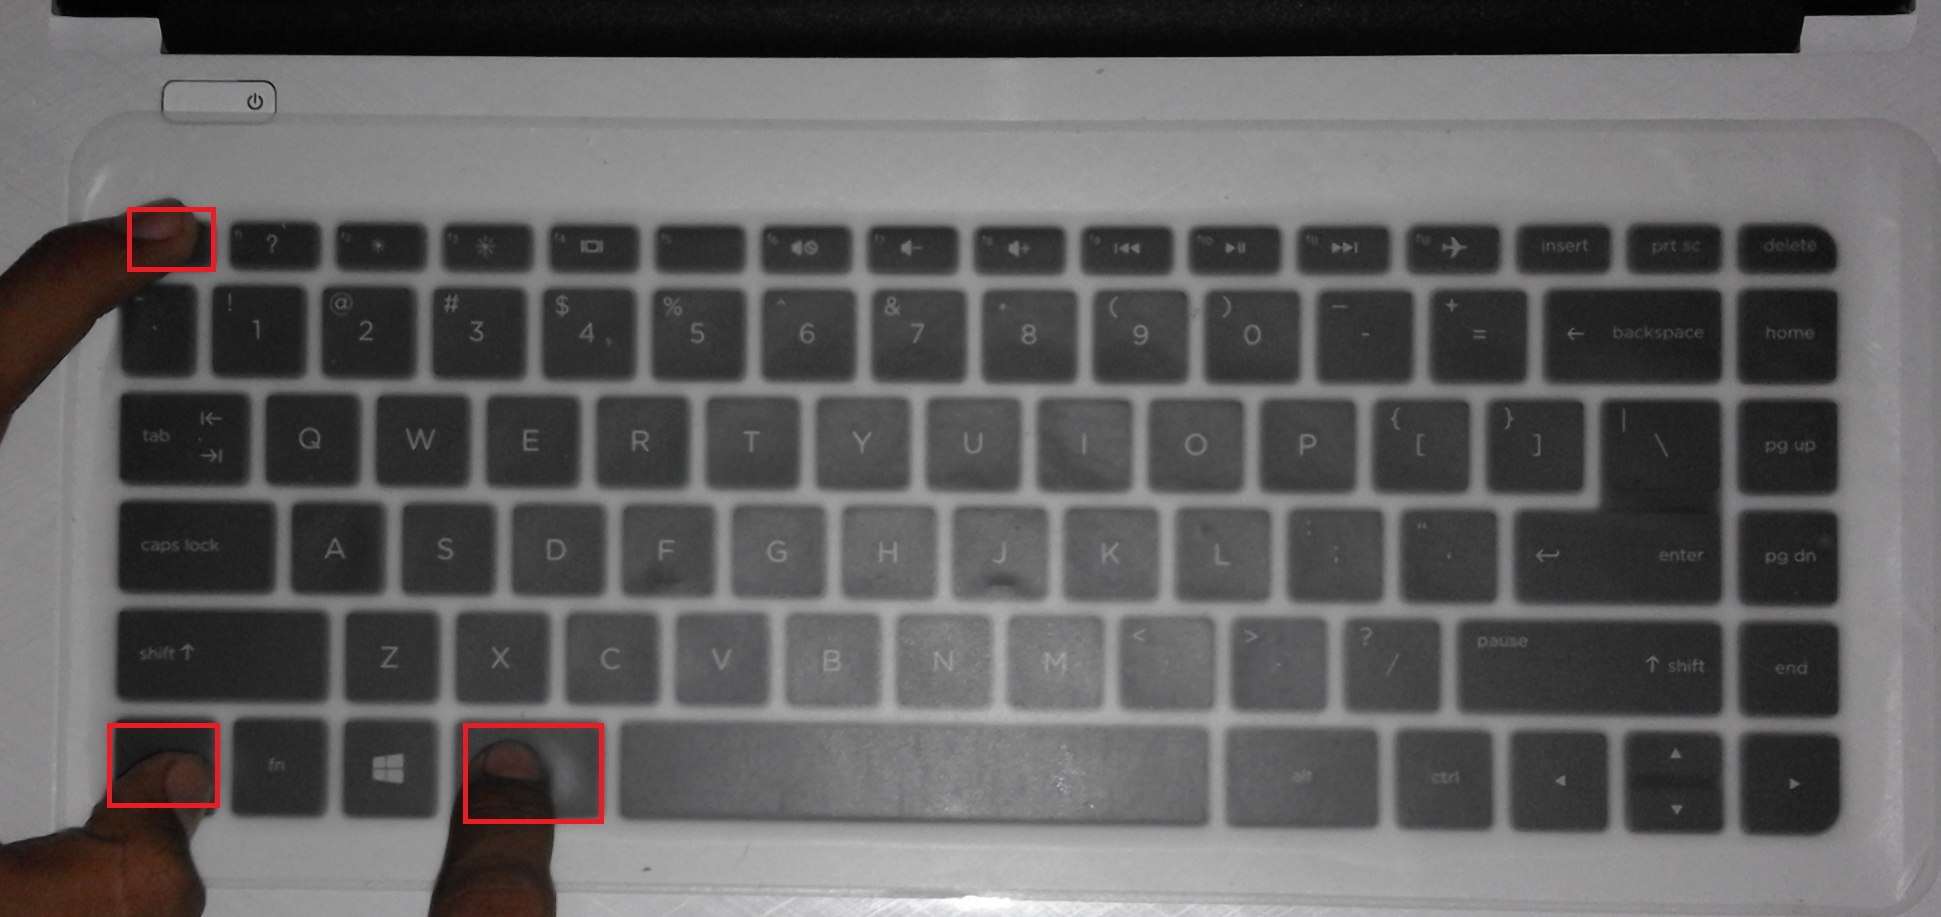 Tombol Pada Keyboard Yang Berfungsi Untuk Membatalkan